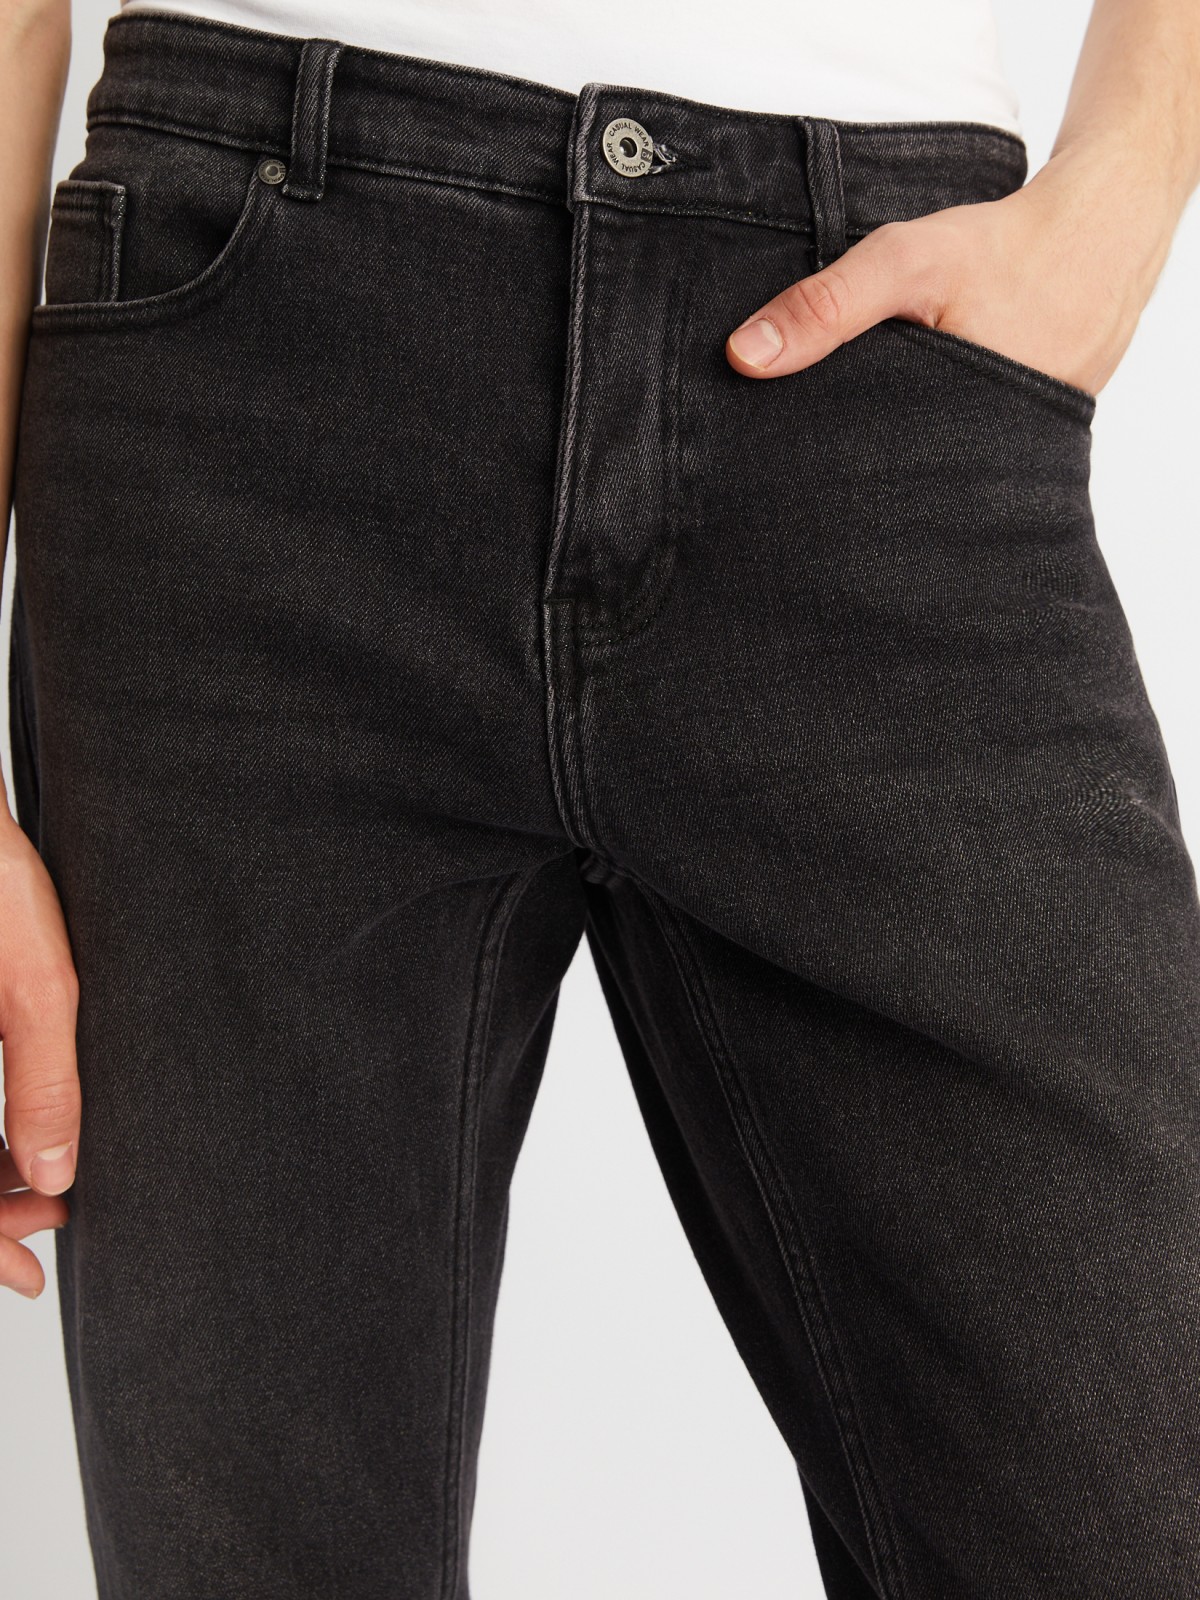 Утеплённые джинсы фасона Tapered с начёсом внутри